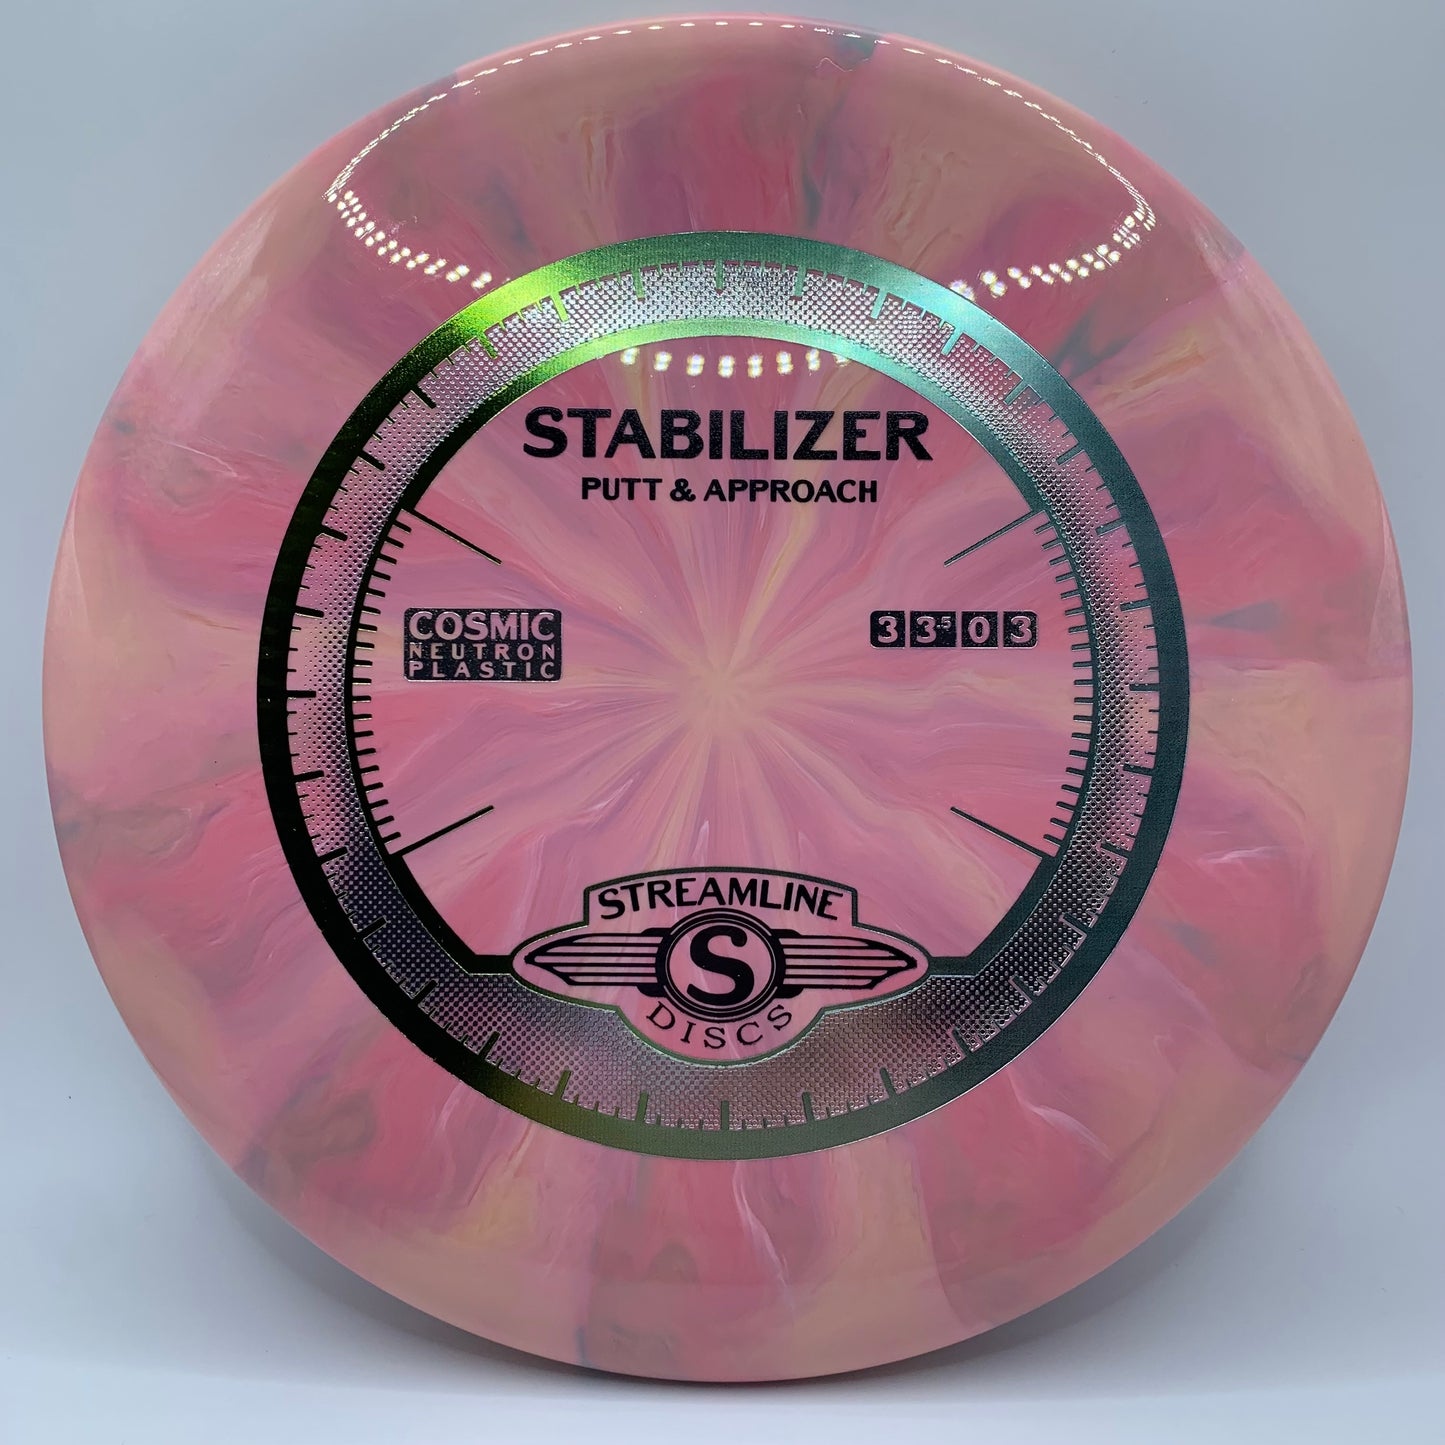 Stabilizer - Cosmic Neutron